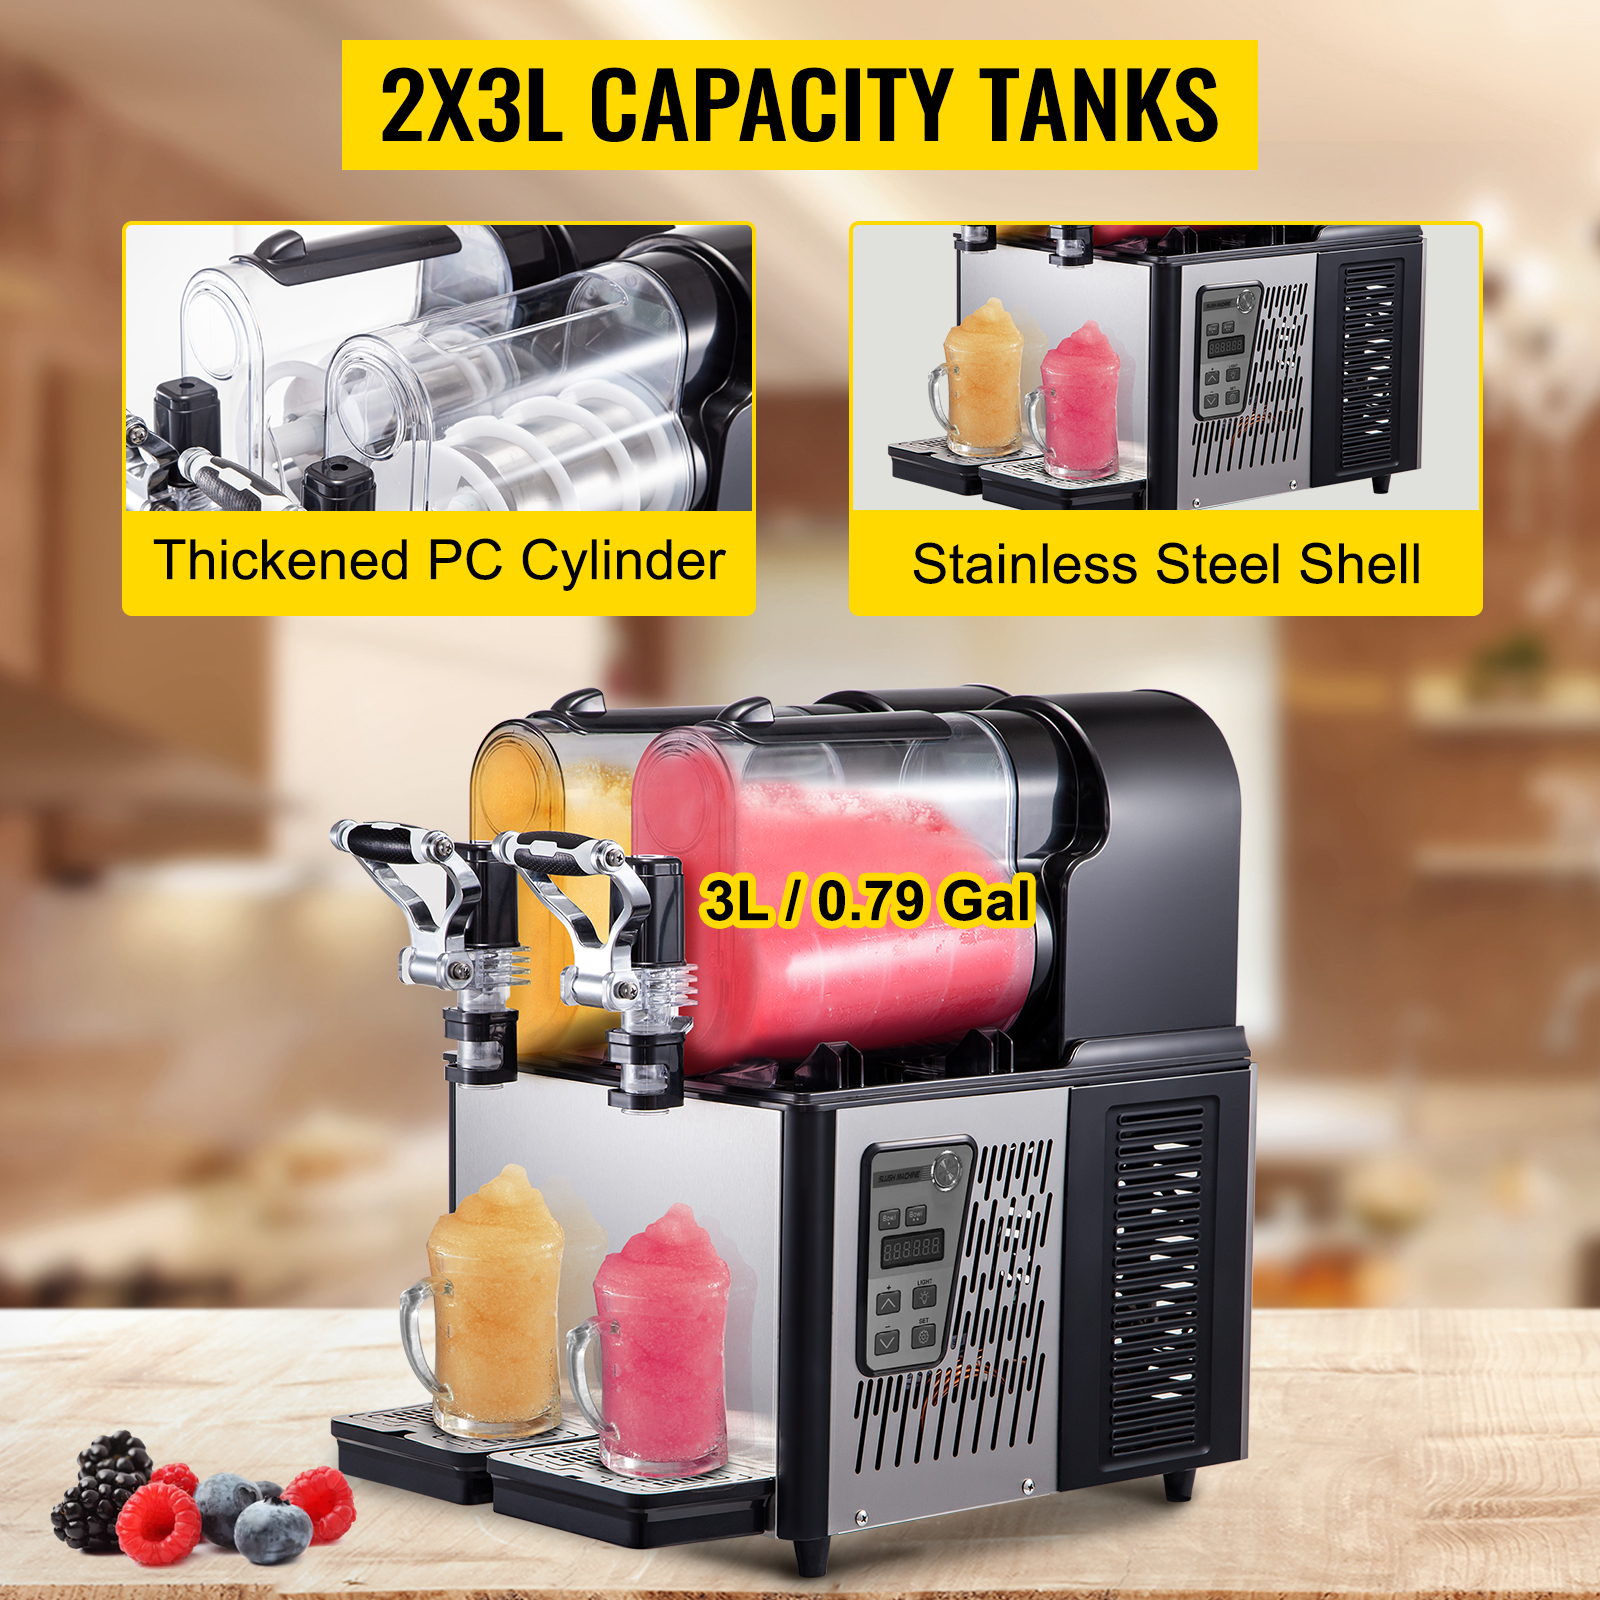 VEVOR Commercial Slushy Machine, 3LX2 Tank Slush Drink Maker, 340W